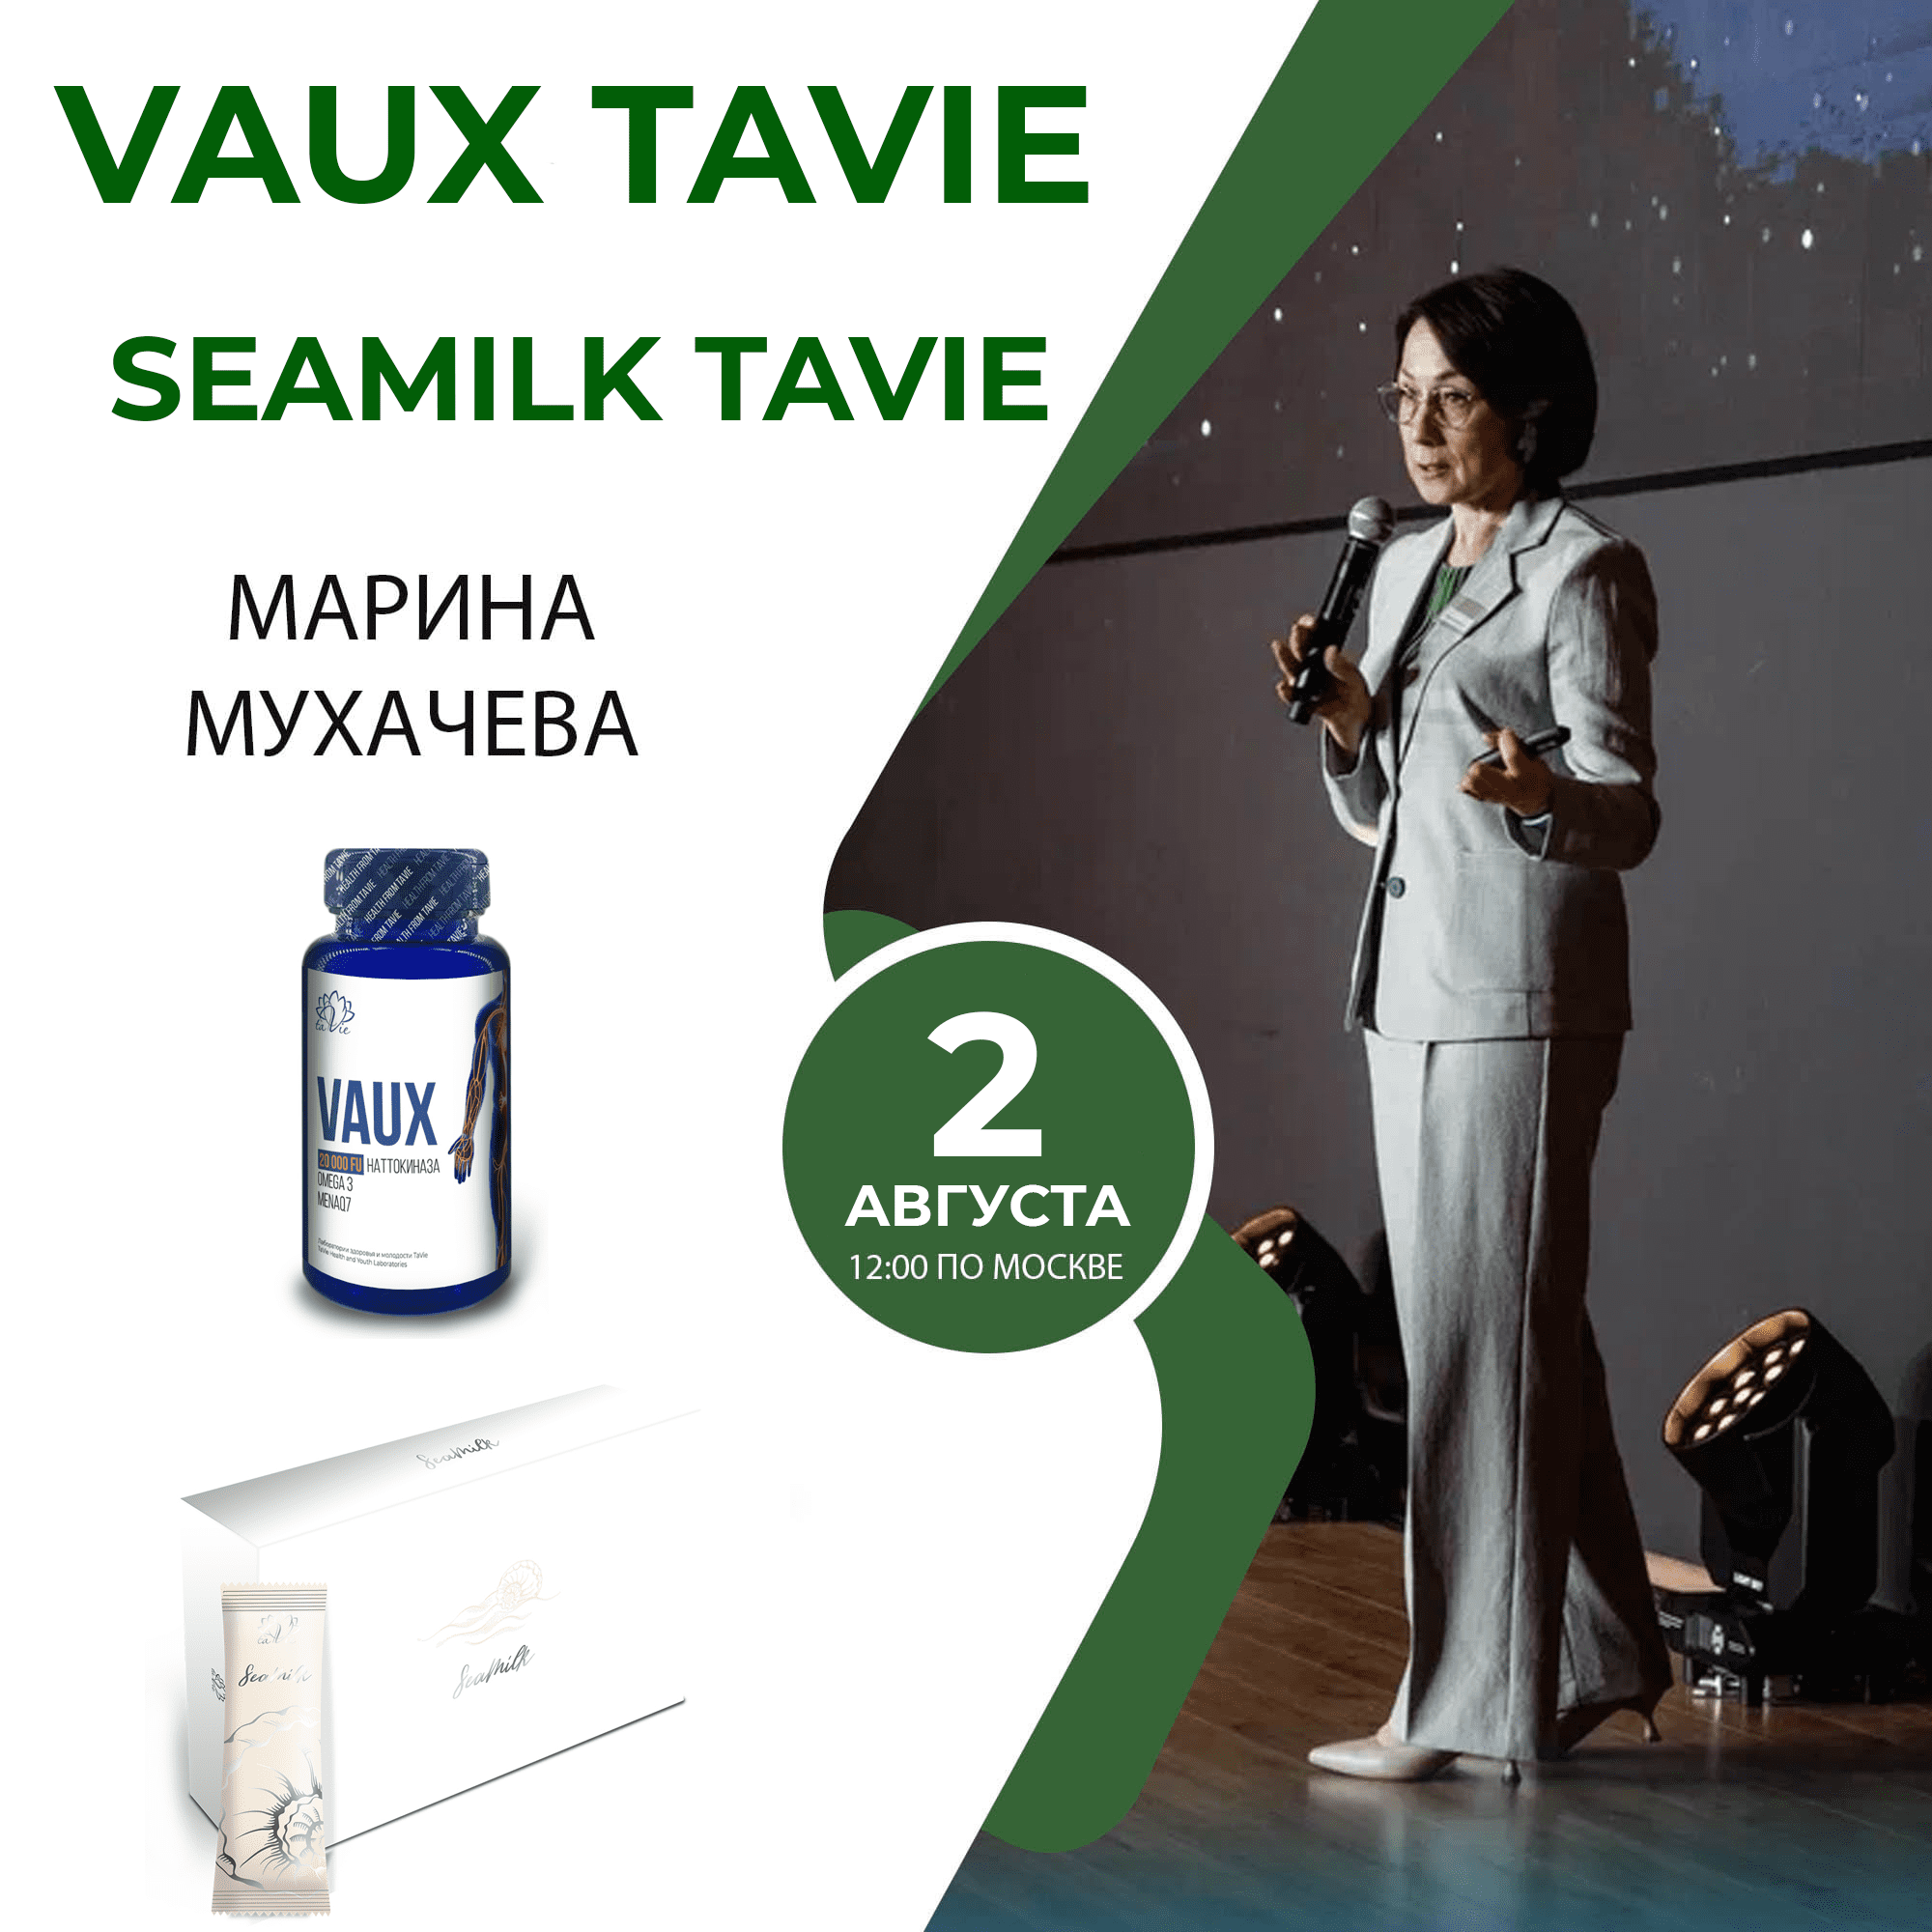 SeaMilk TaVie + VAUX TaVie